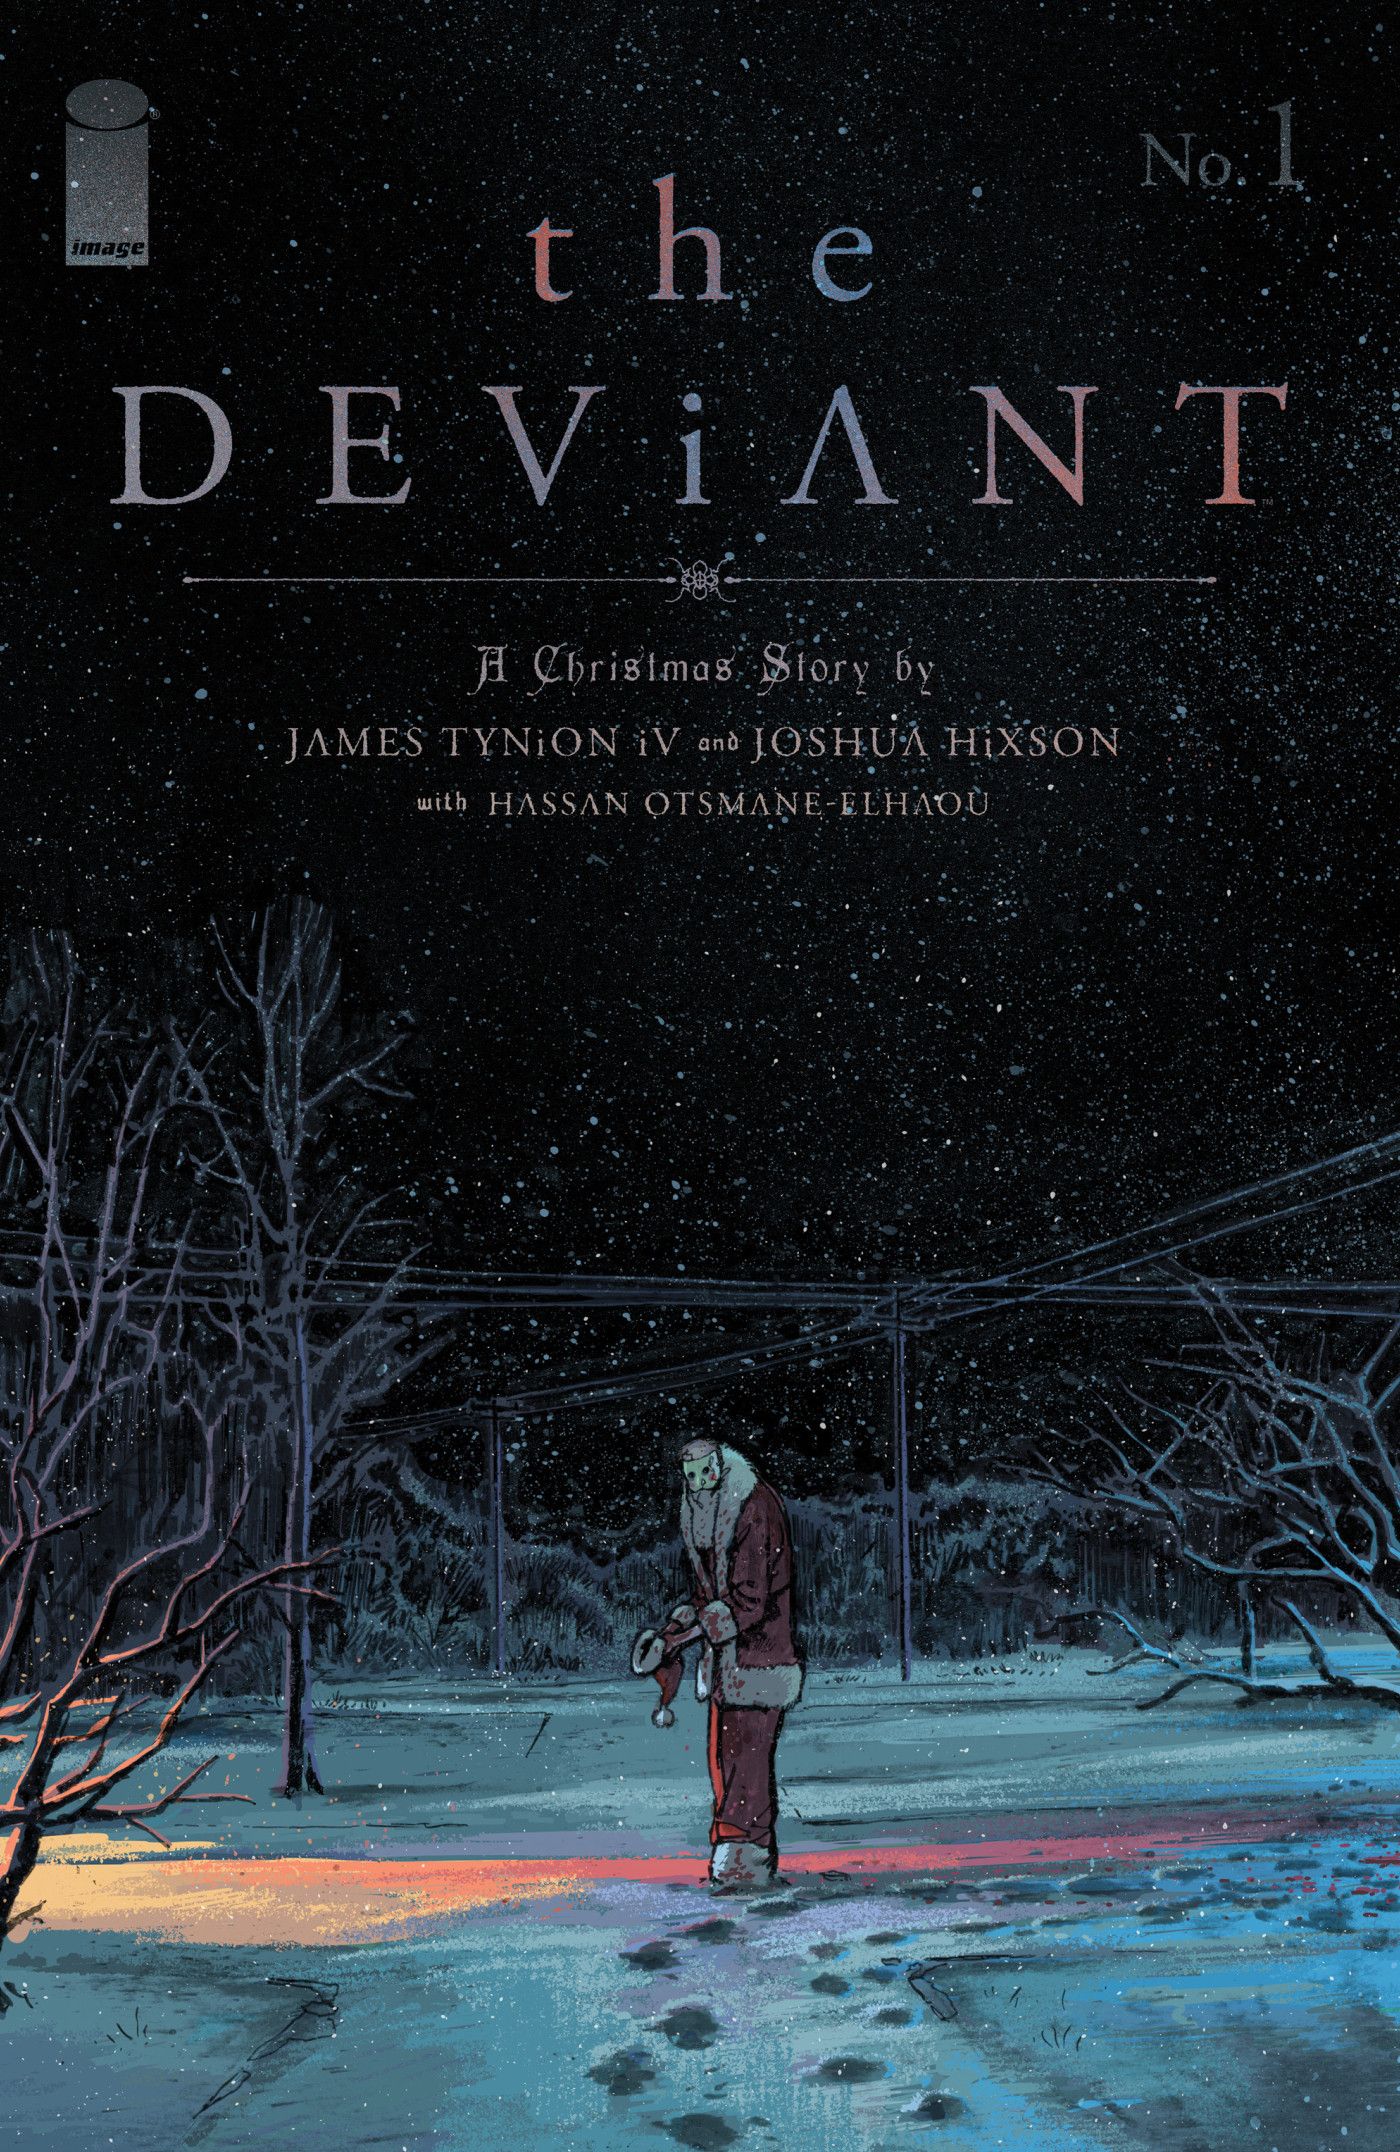 The Deviant #1 ACover by Joshua Hixson